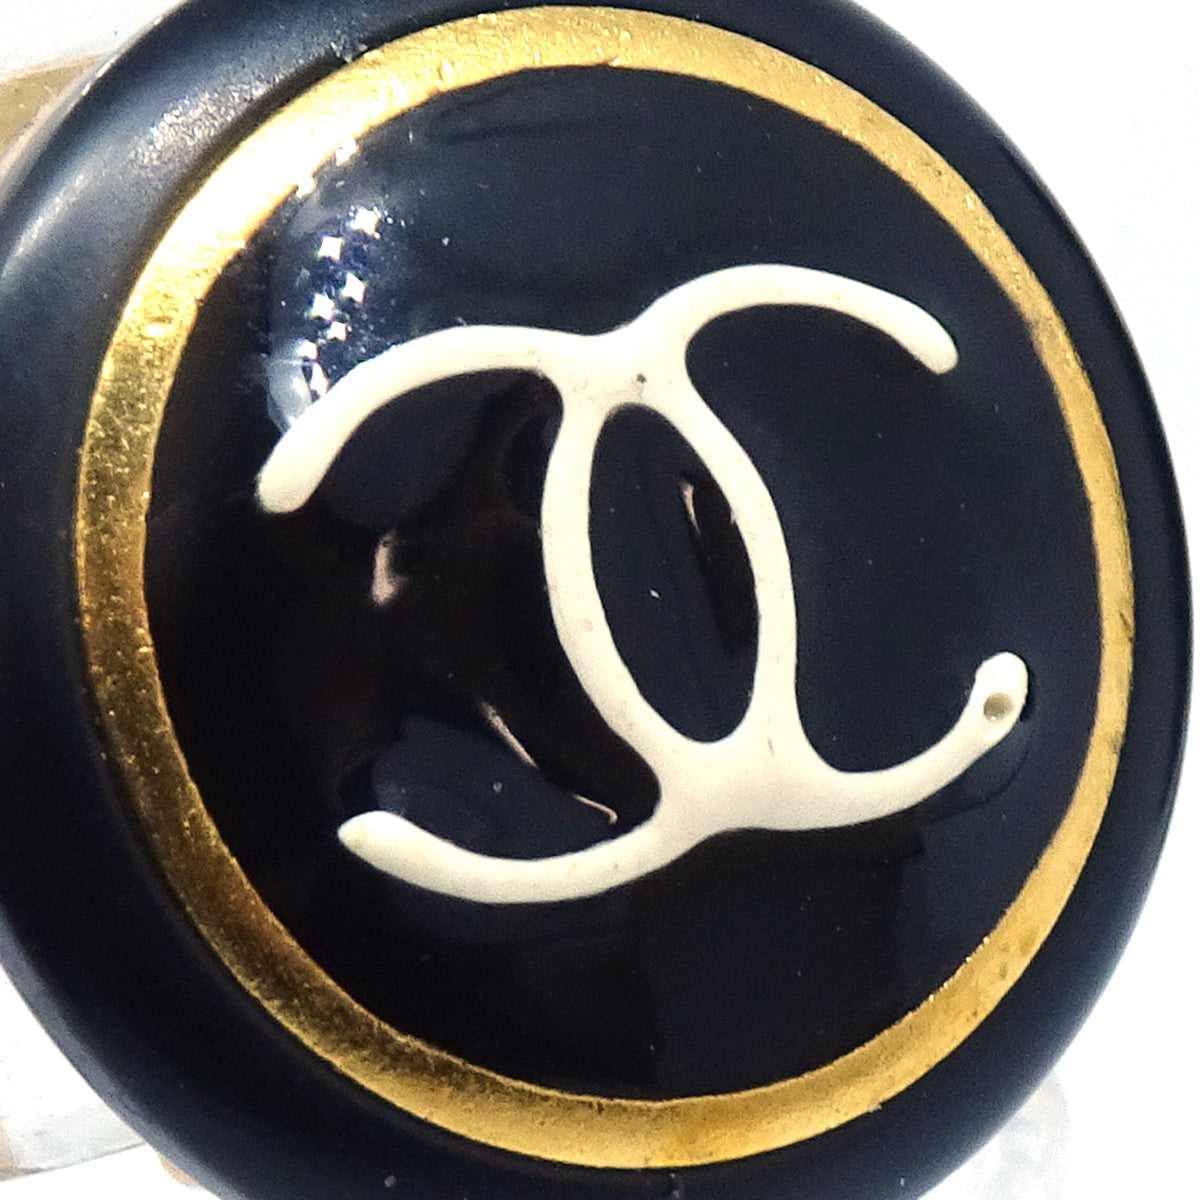 Chanel 1997 黑色和金色耳環